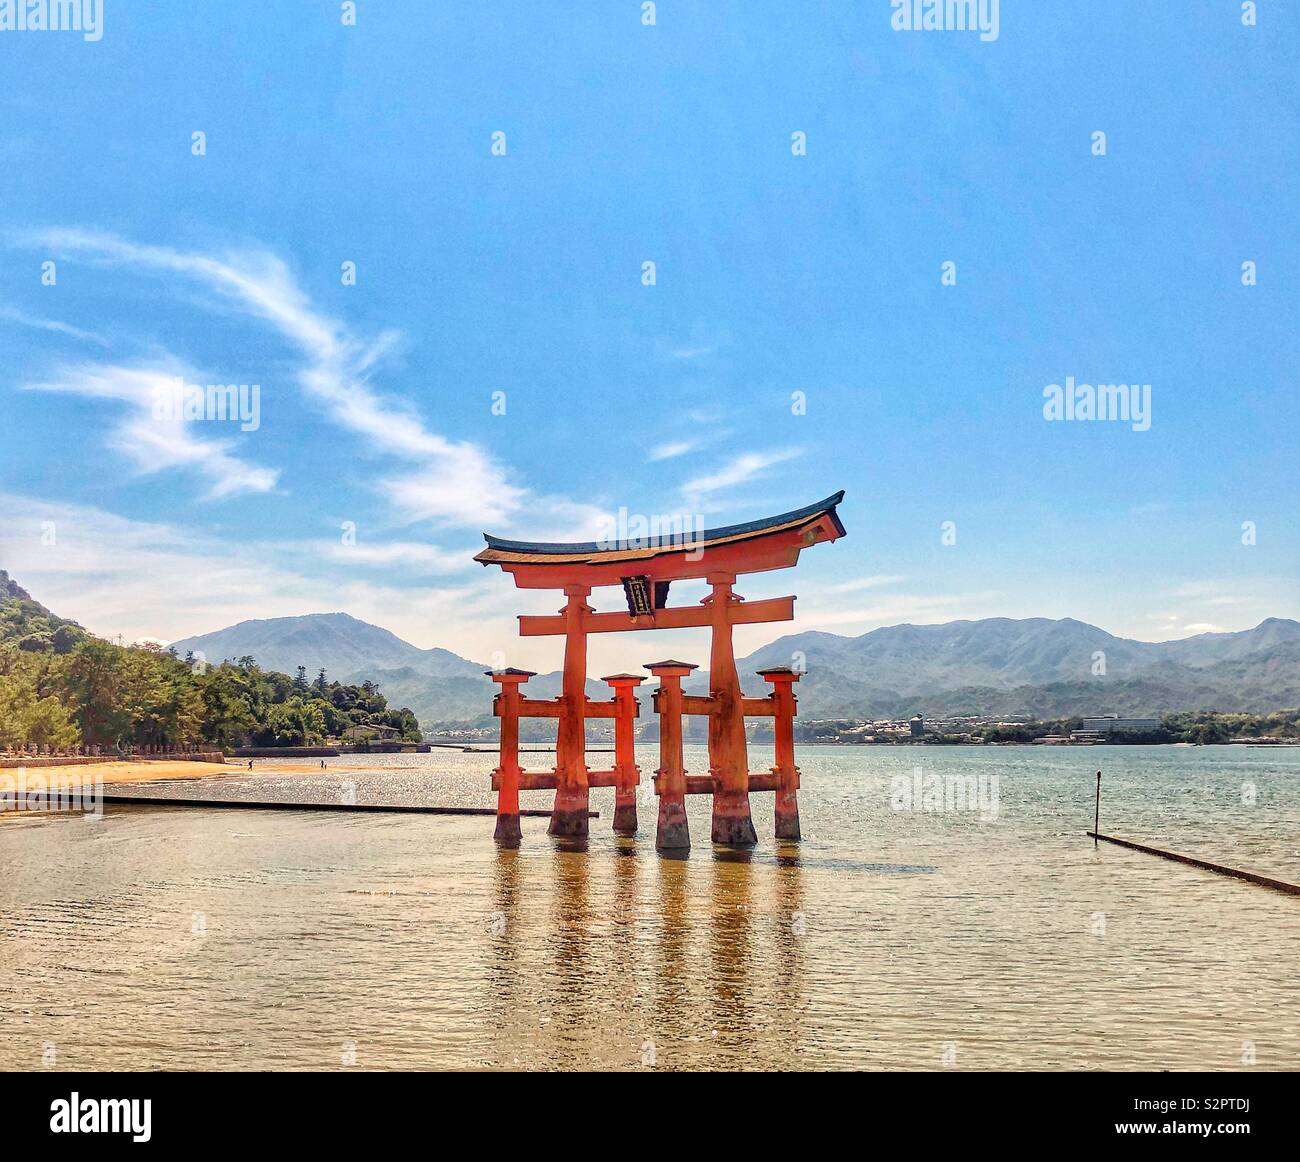 La porte flottante d'Itsukushima sur l'île de Miyajima, Osaka, Japon Banque D'Images